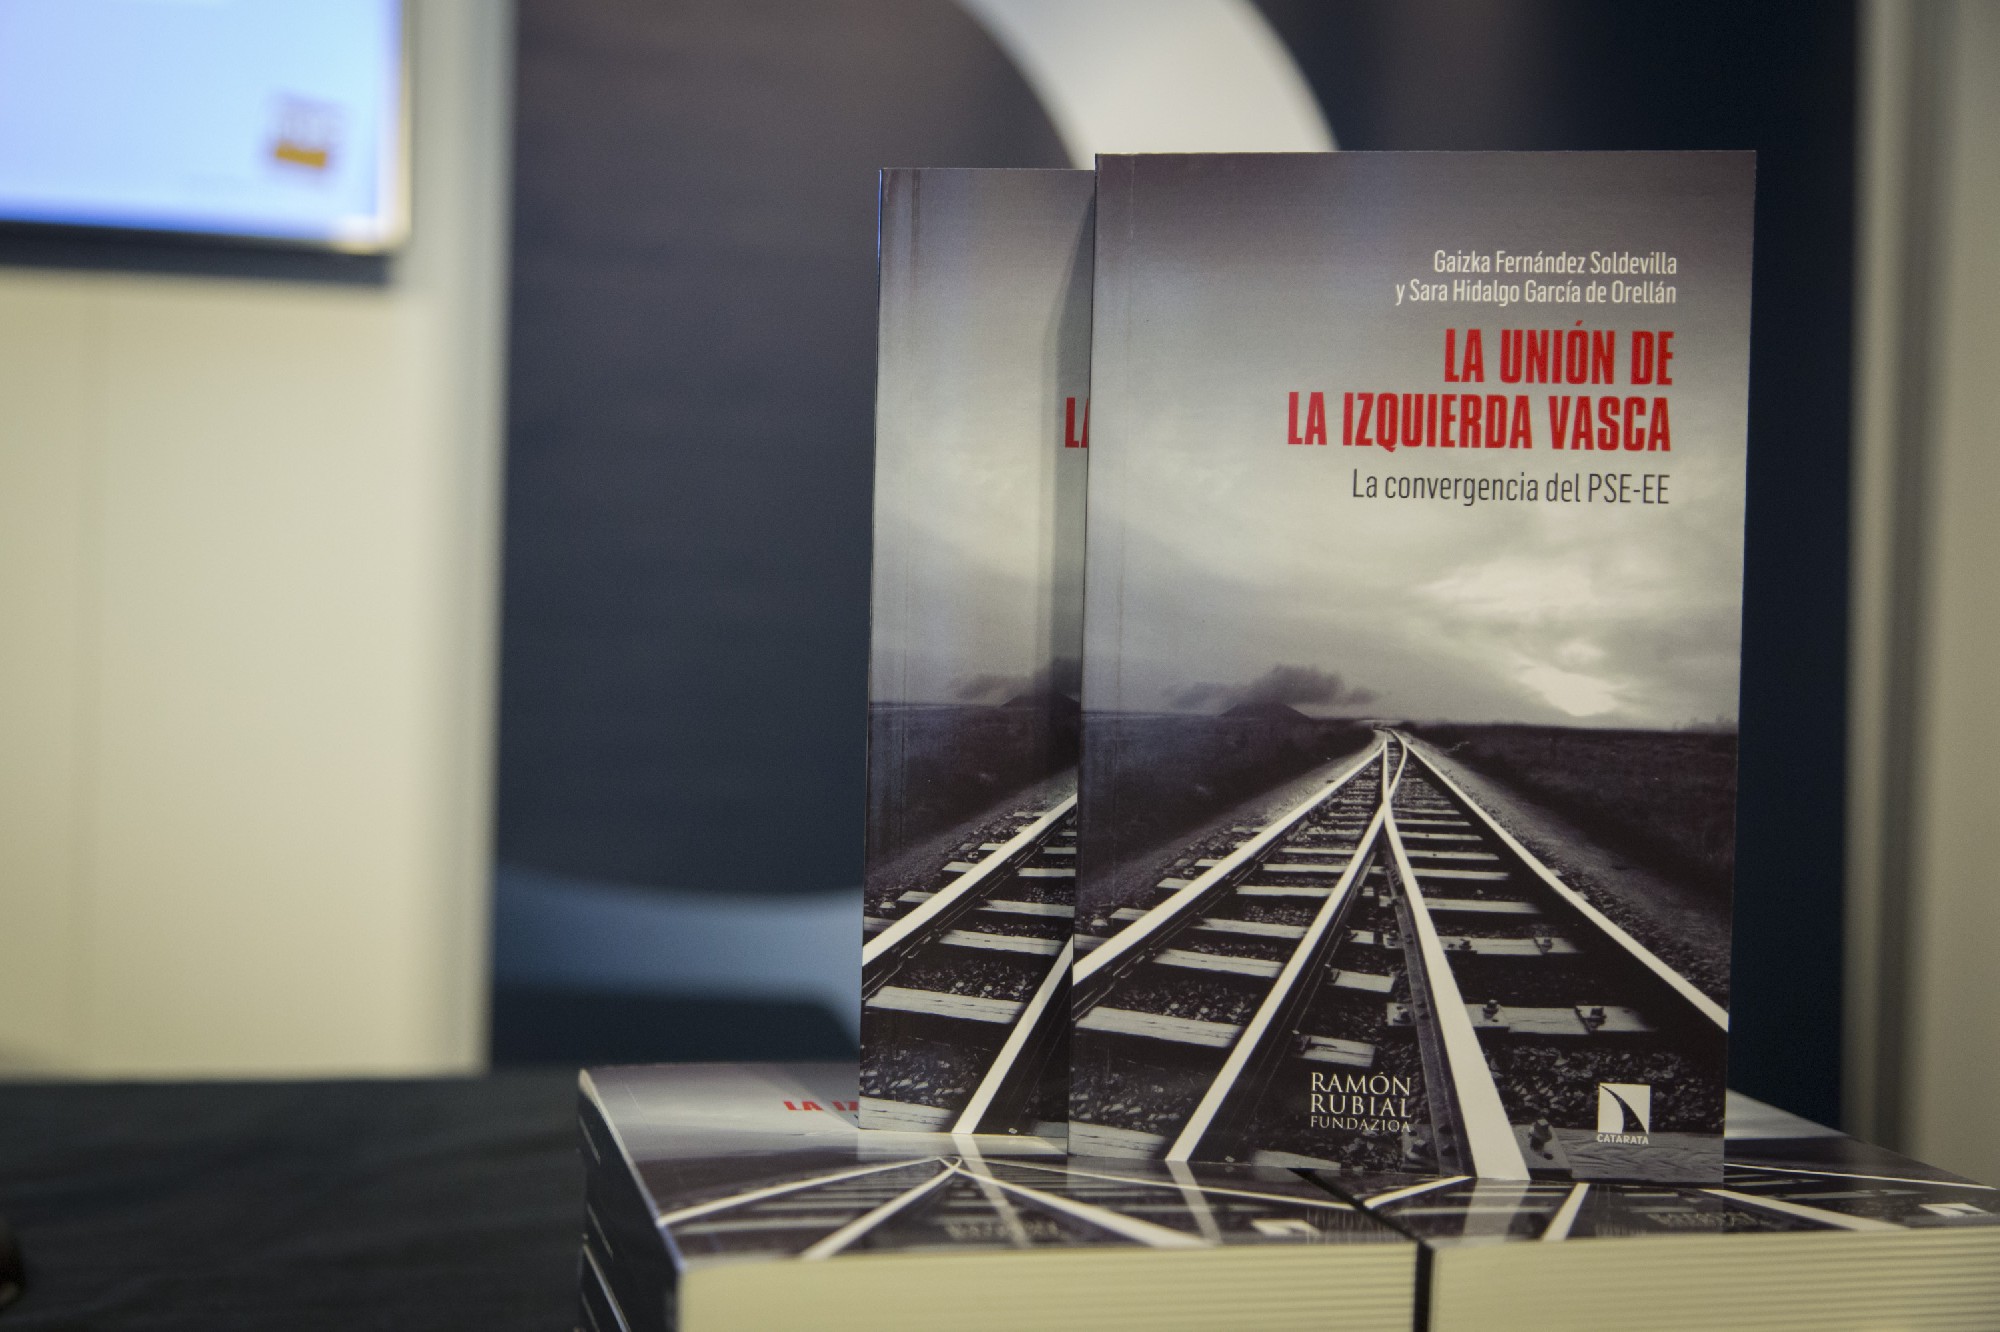 Presentación del libro " La unión de la izquierda vasca" Foto | Socialistas Vascos